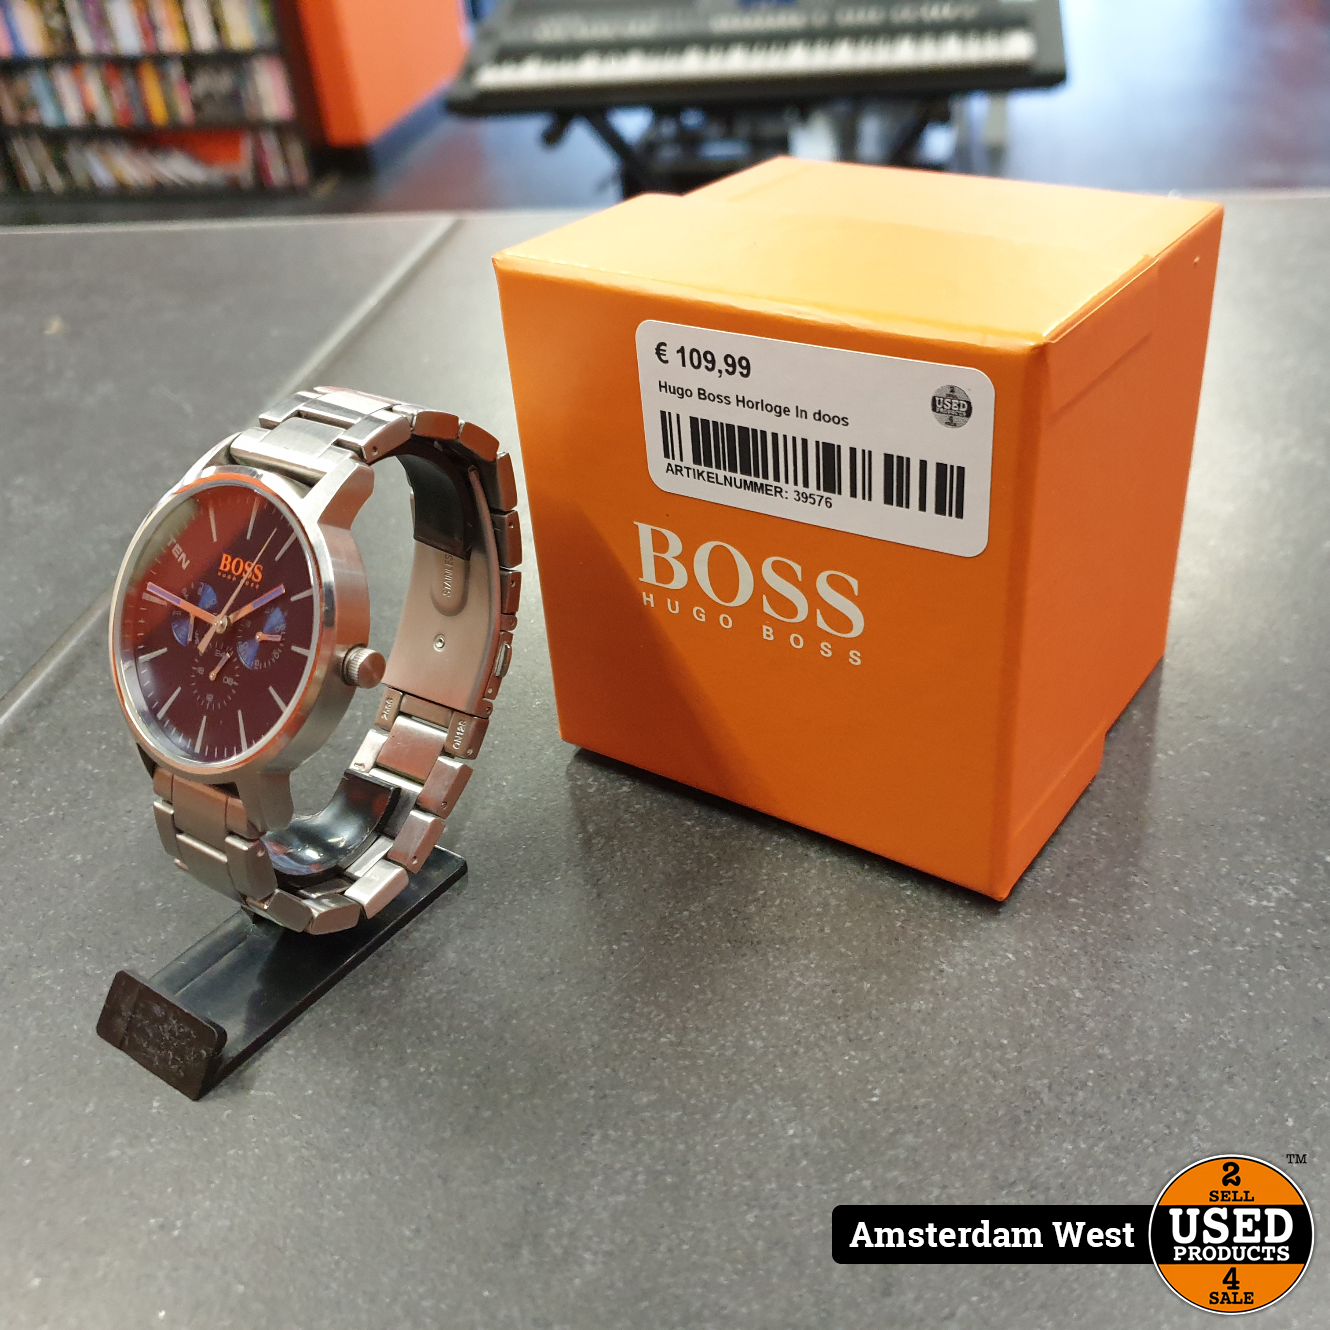 Afleiding milieu uitgebreid Hugo Boss Horloge In doos - Used Products Amsterdam West